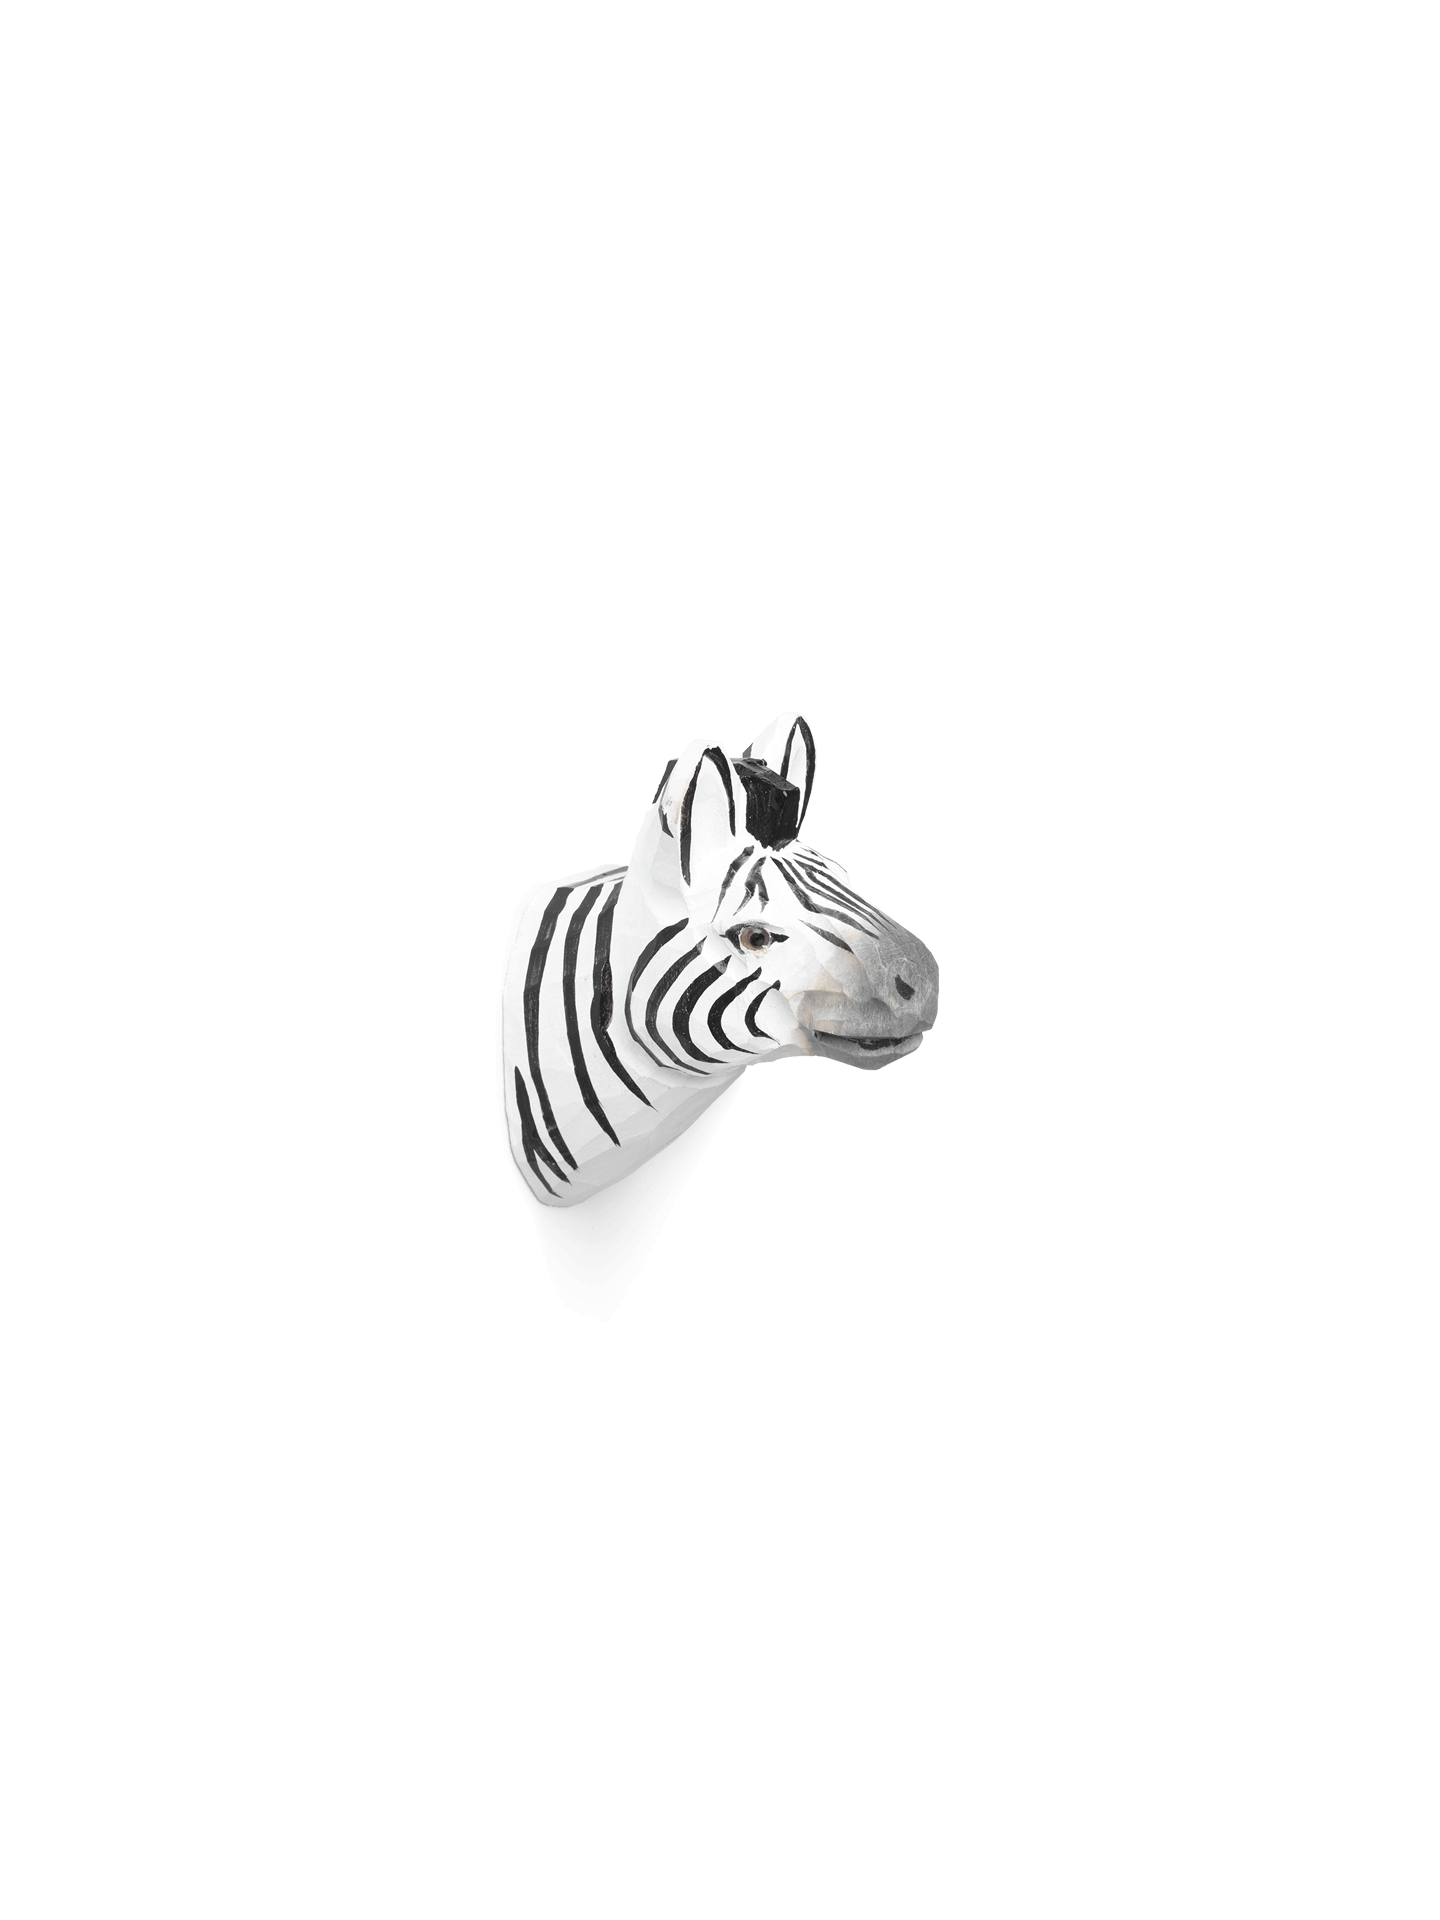 Cuier sculptat manual Ferm Living – Zebra